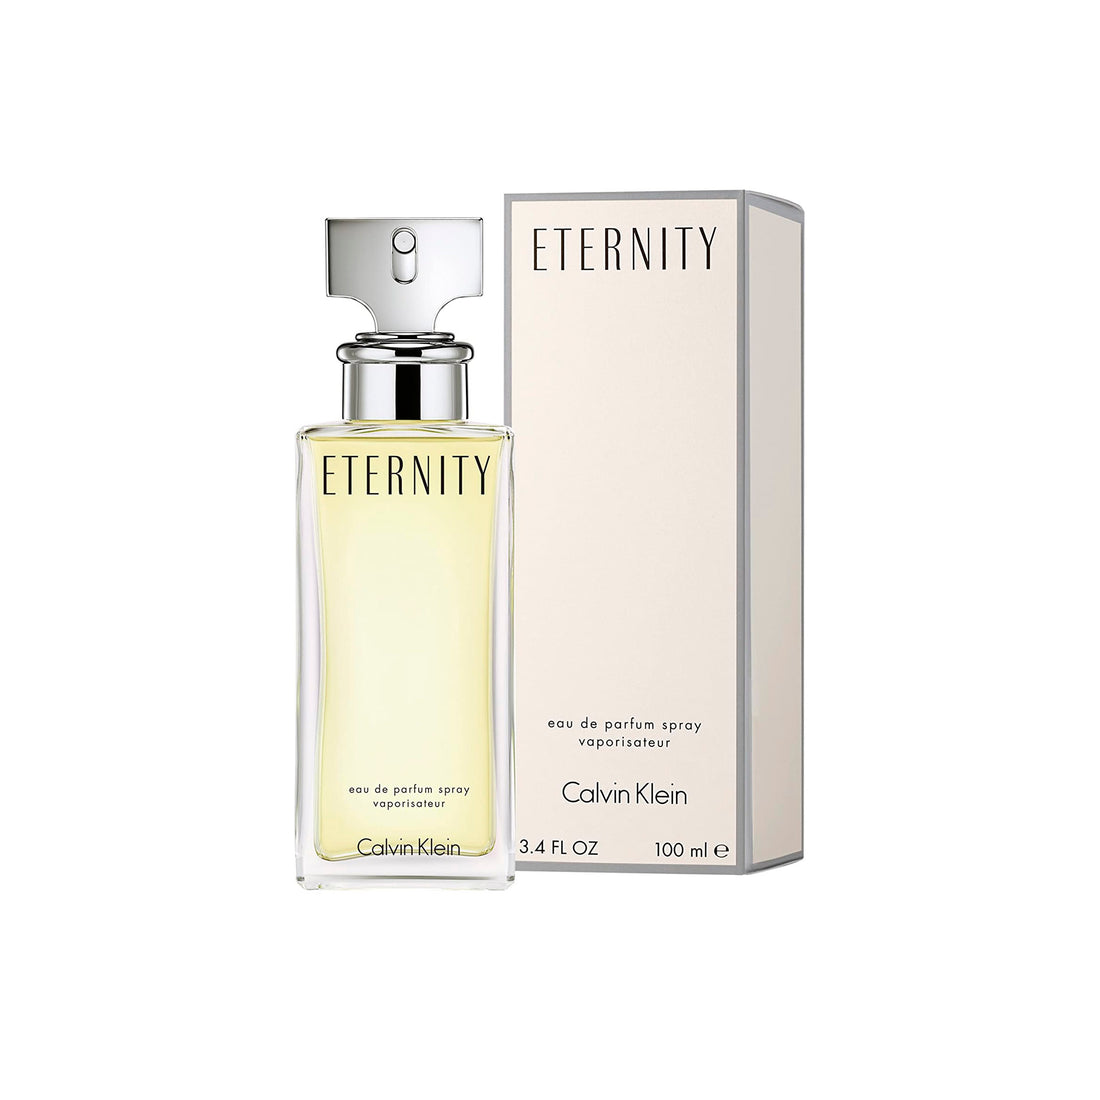 Calvin Klein Eternity Eau de Parfum Vaporizador 100 ml